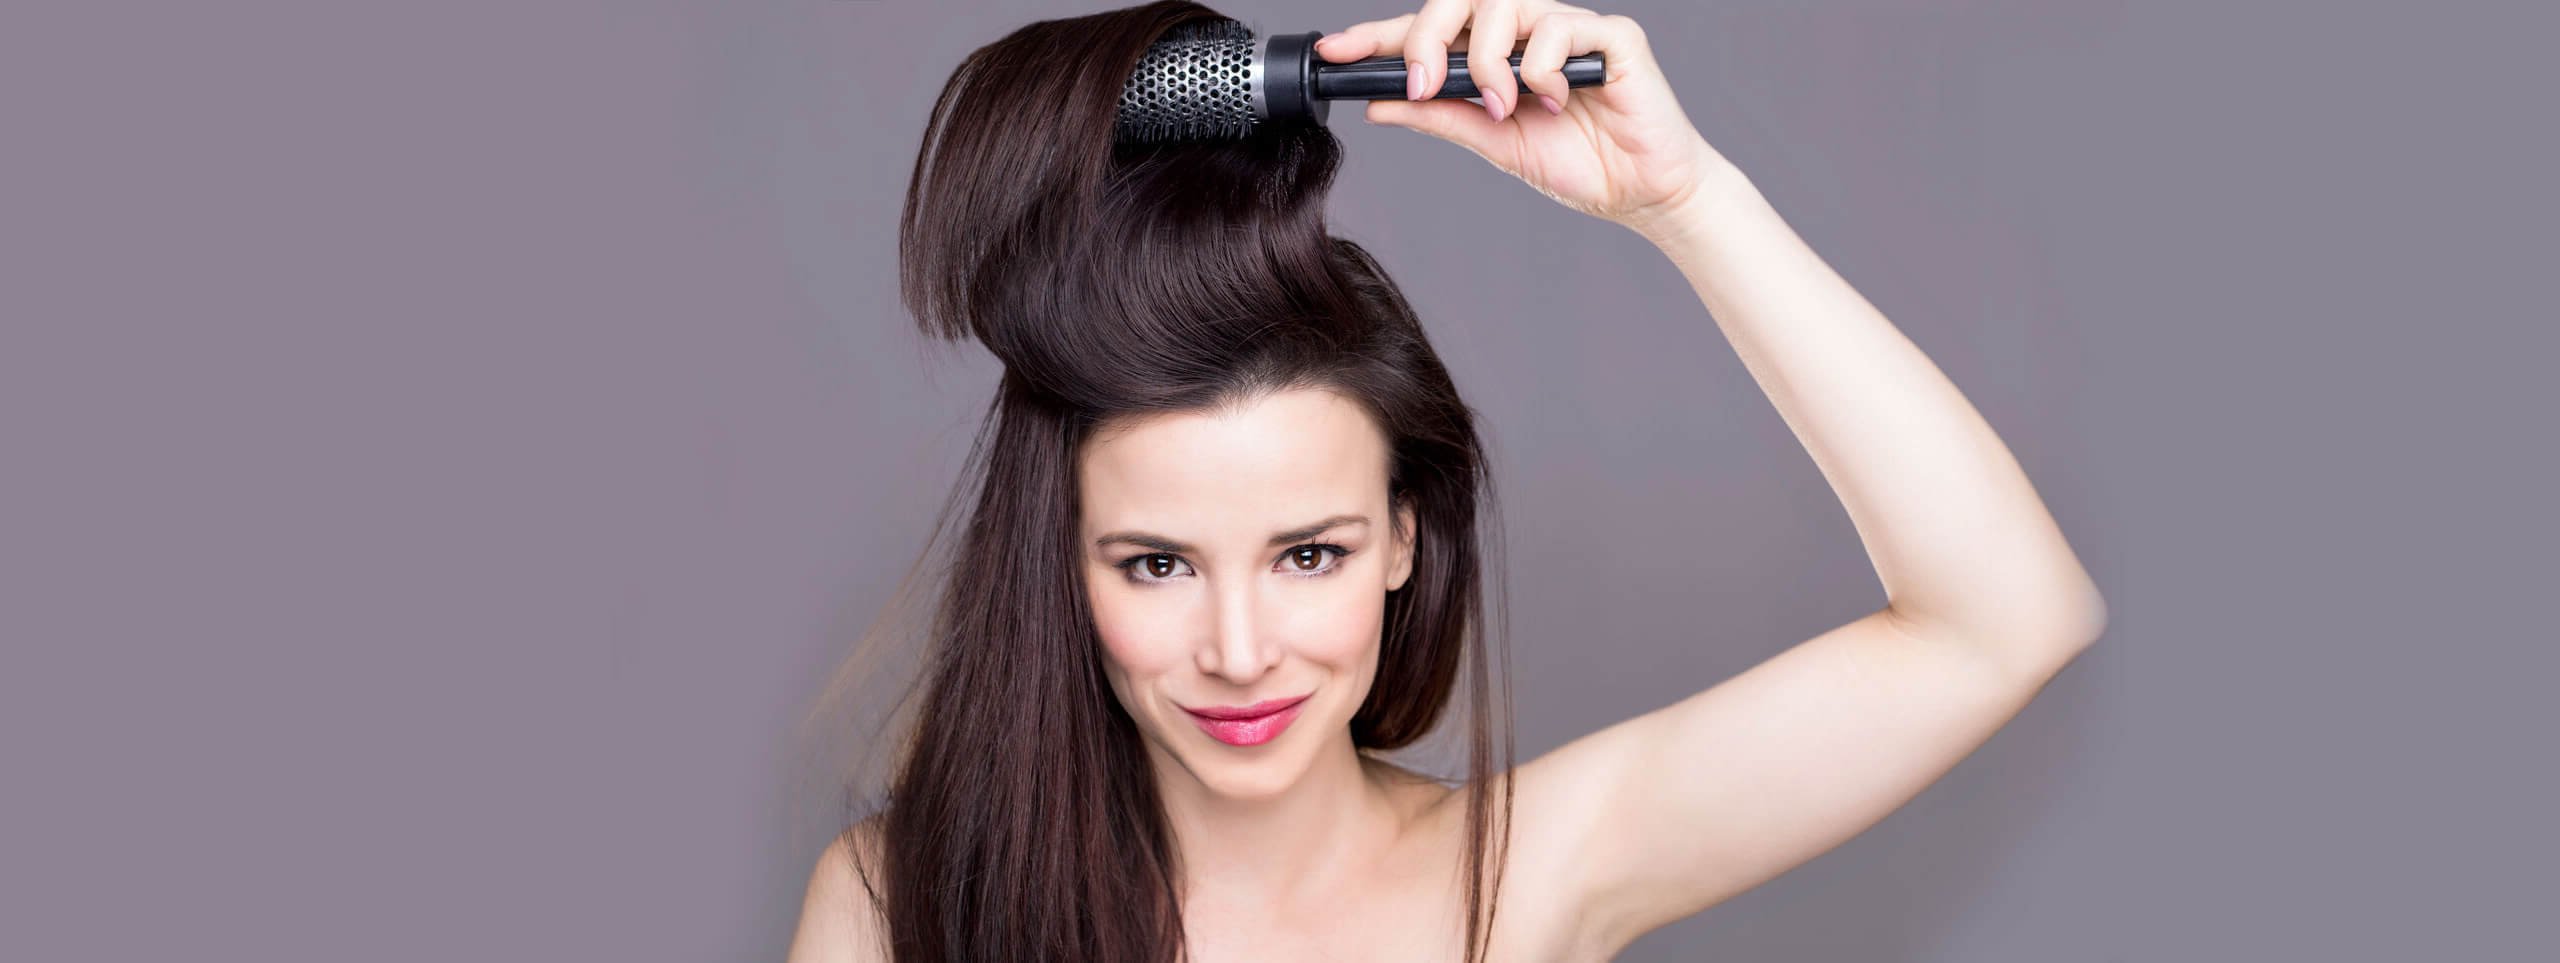 Tipp gegen feines Haar - richtig kämmen 